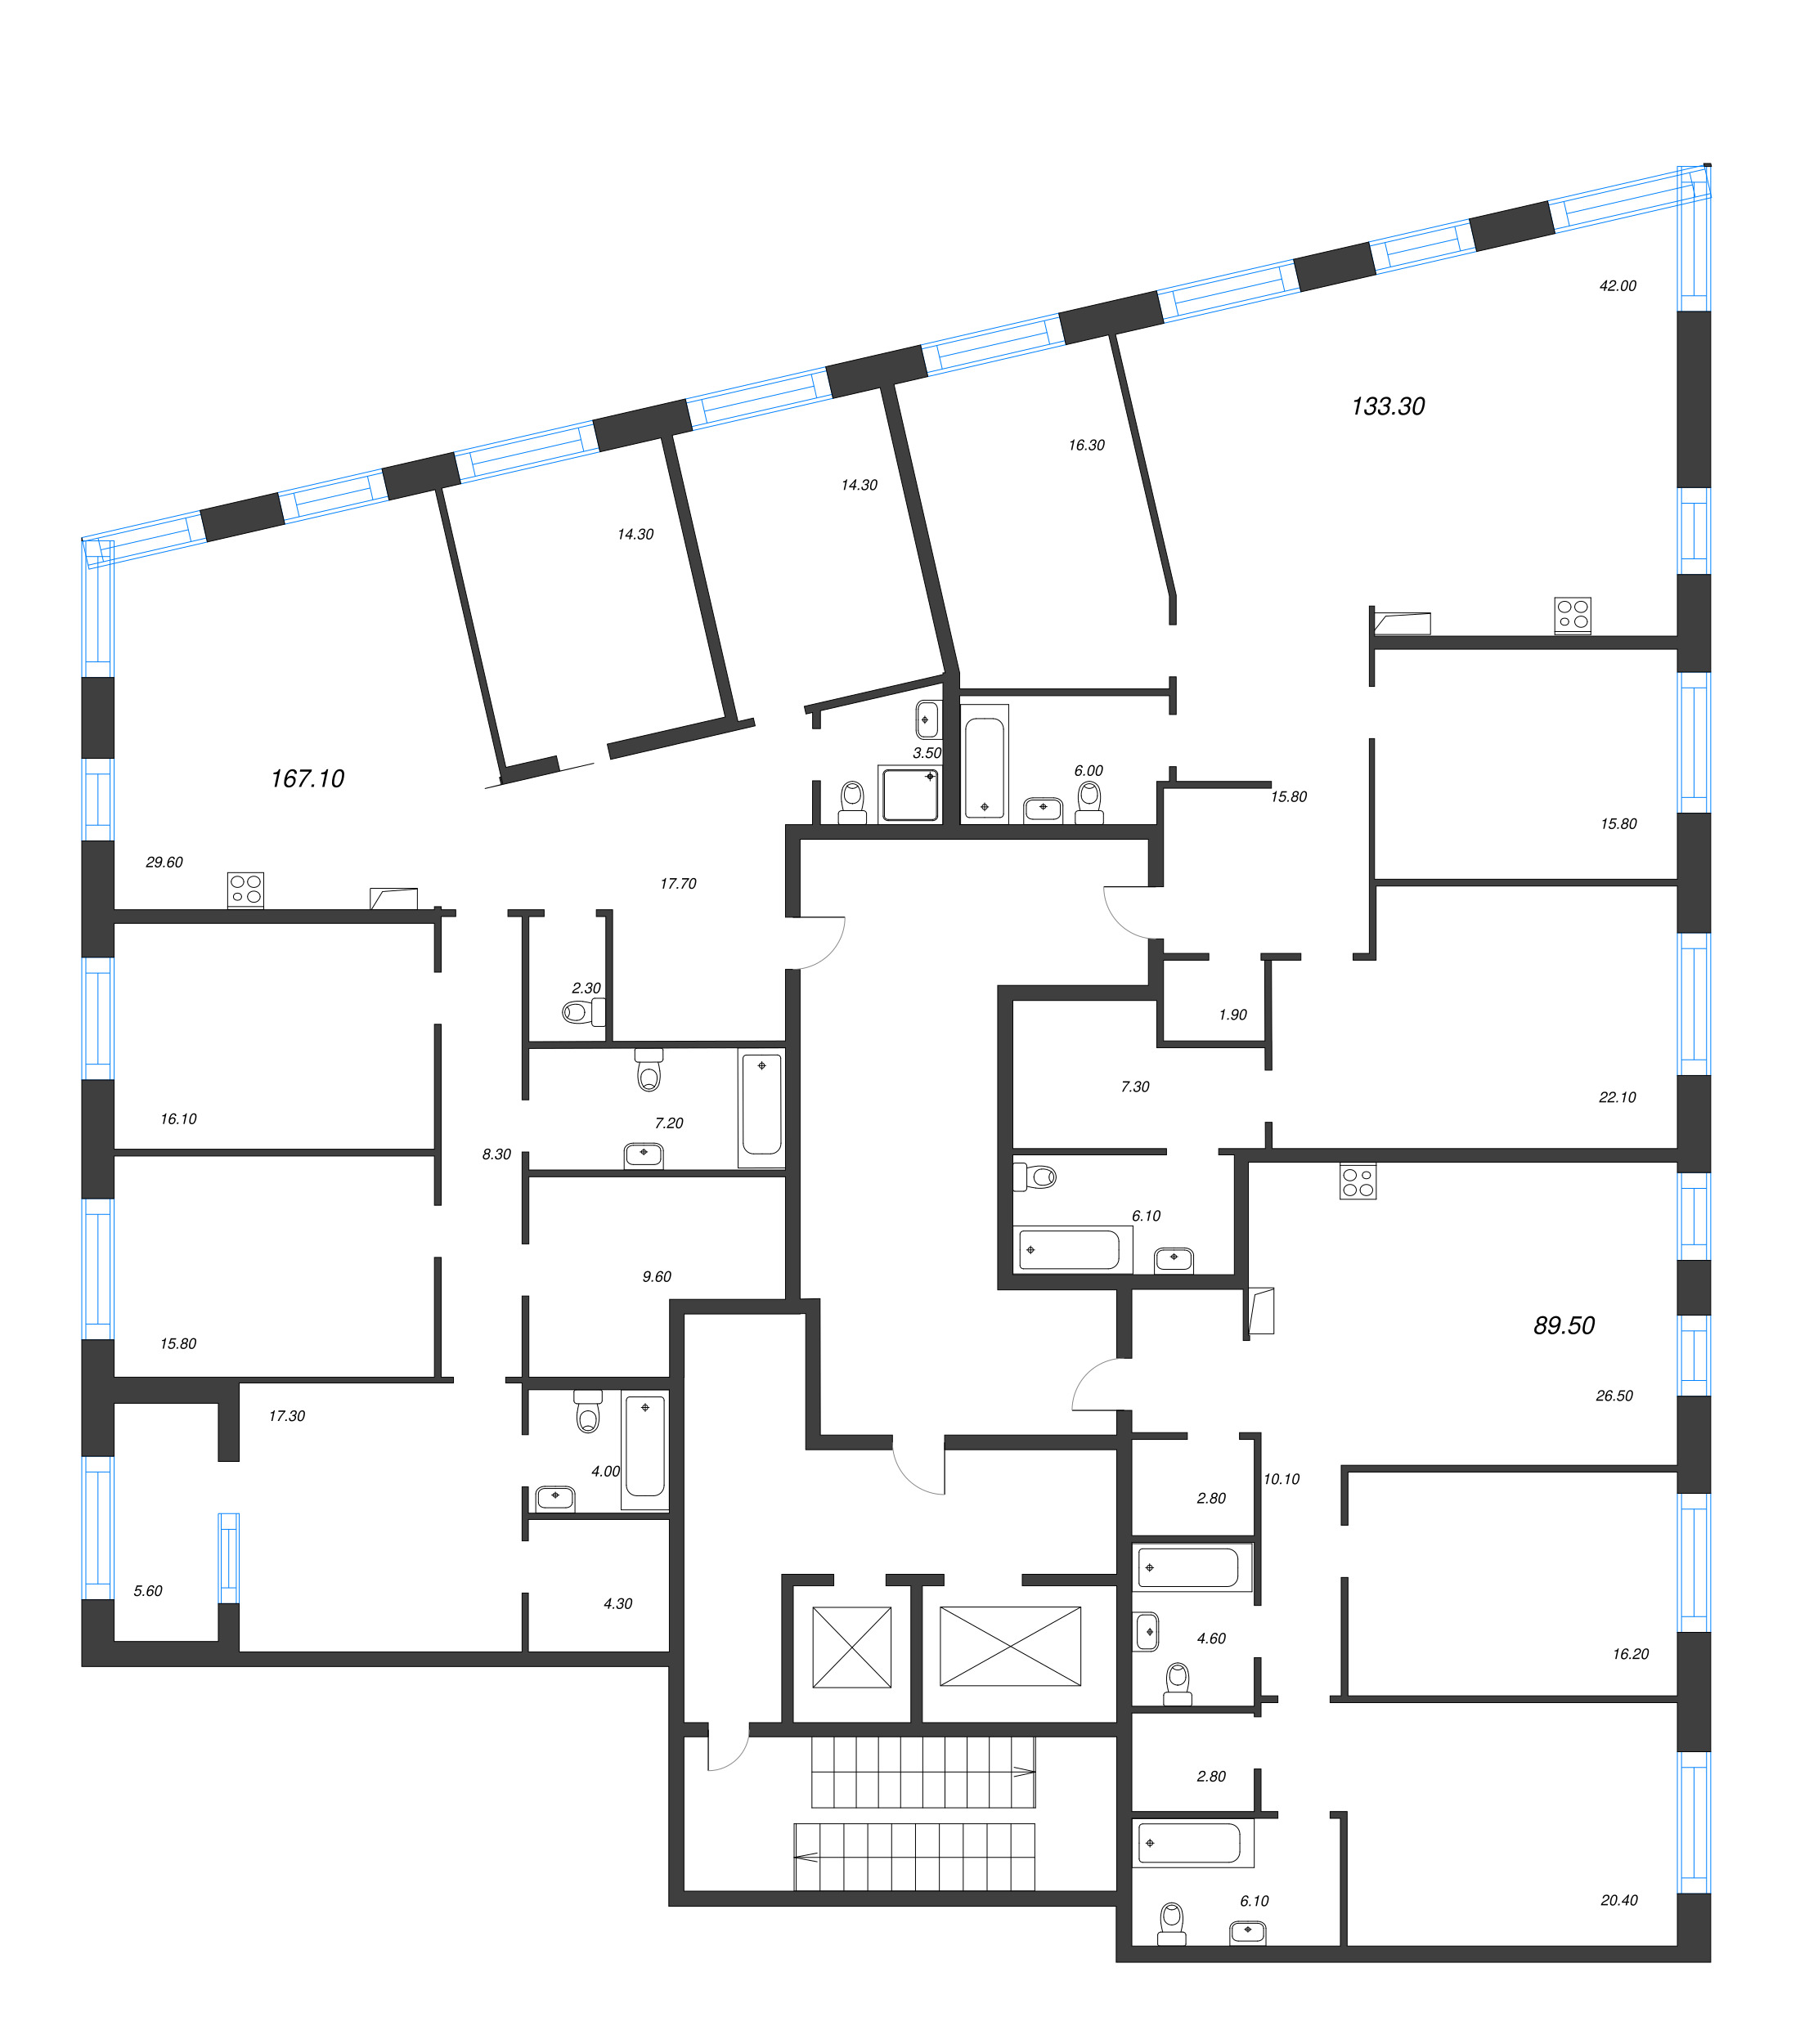 6 ккв (Евро), 167.1 м² в ЖК "ЛДМ" - планировка этажа